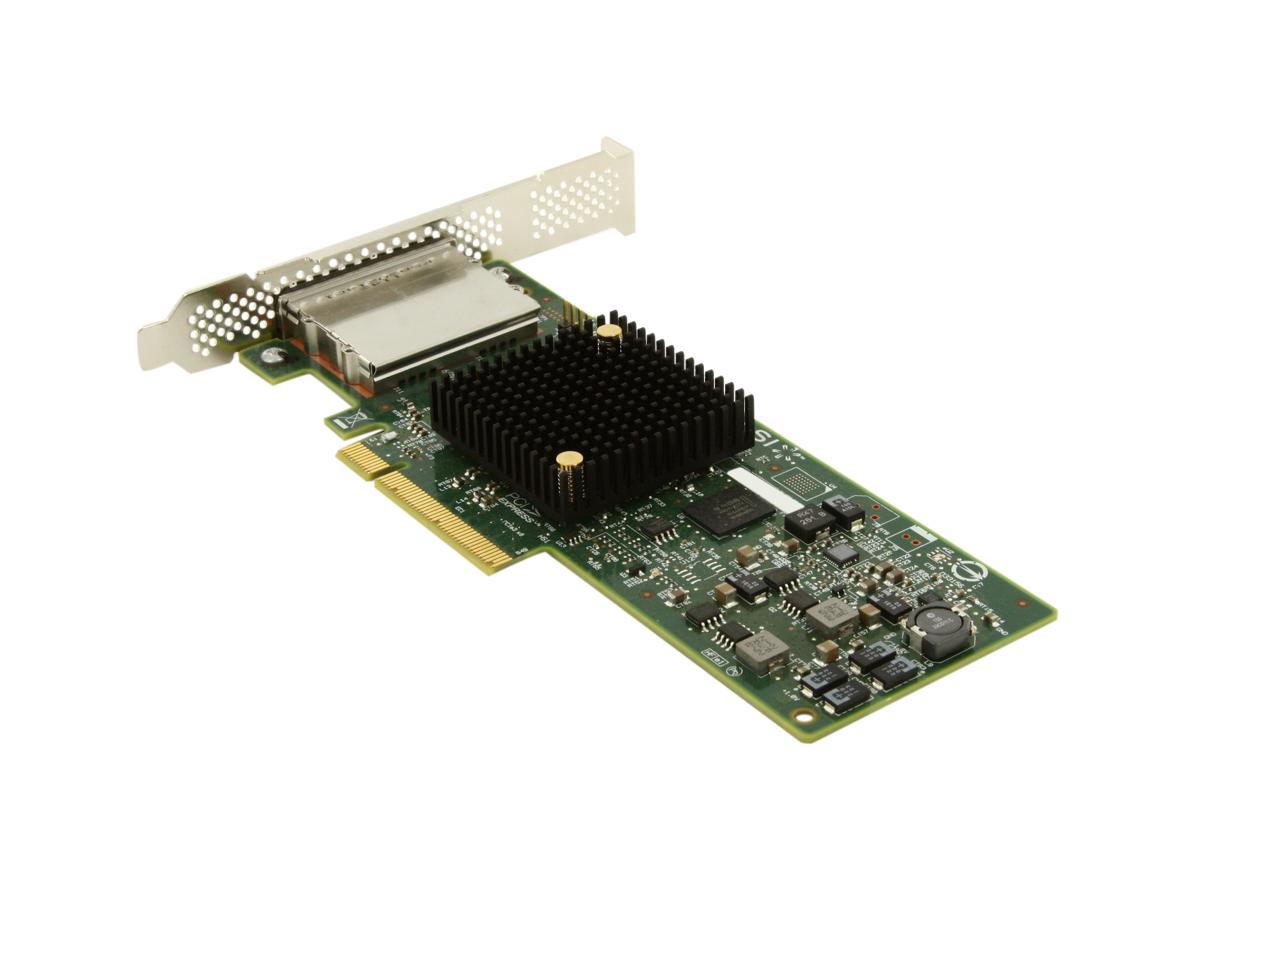 LSI LSI00300 (9207-8e) PCI-Express 3.0 x8 SATA / SAS Host